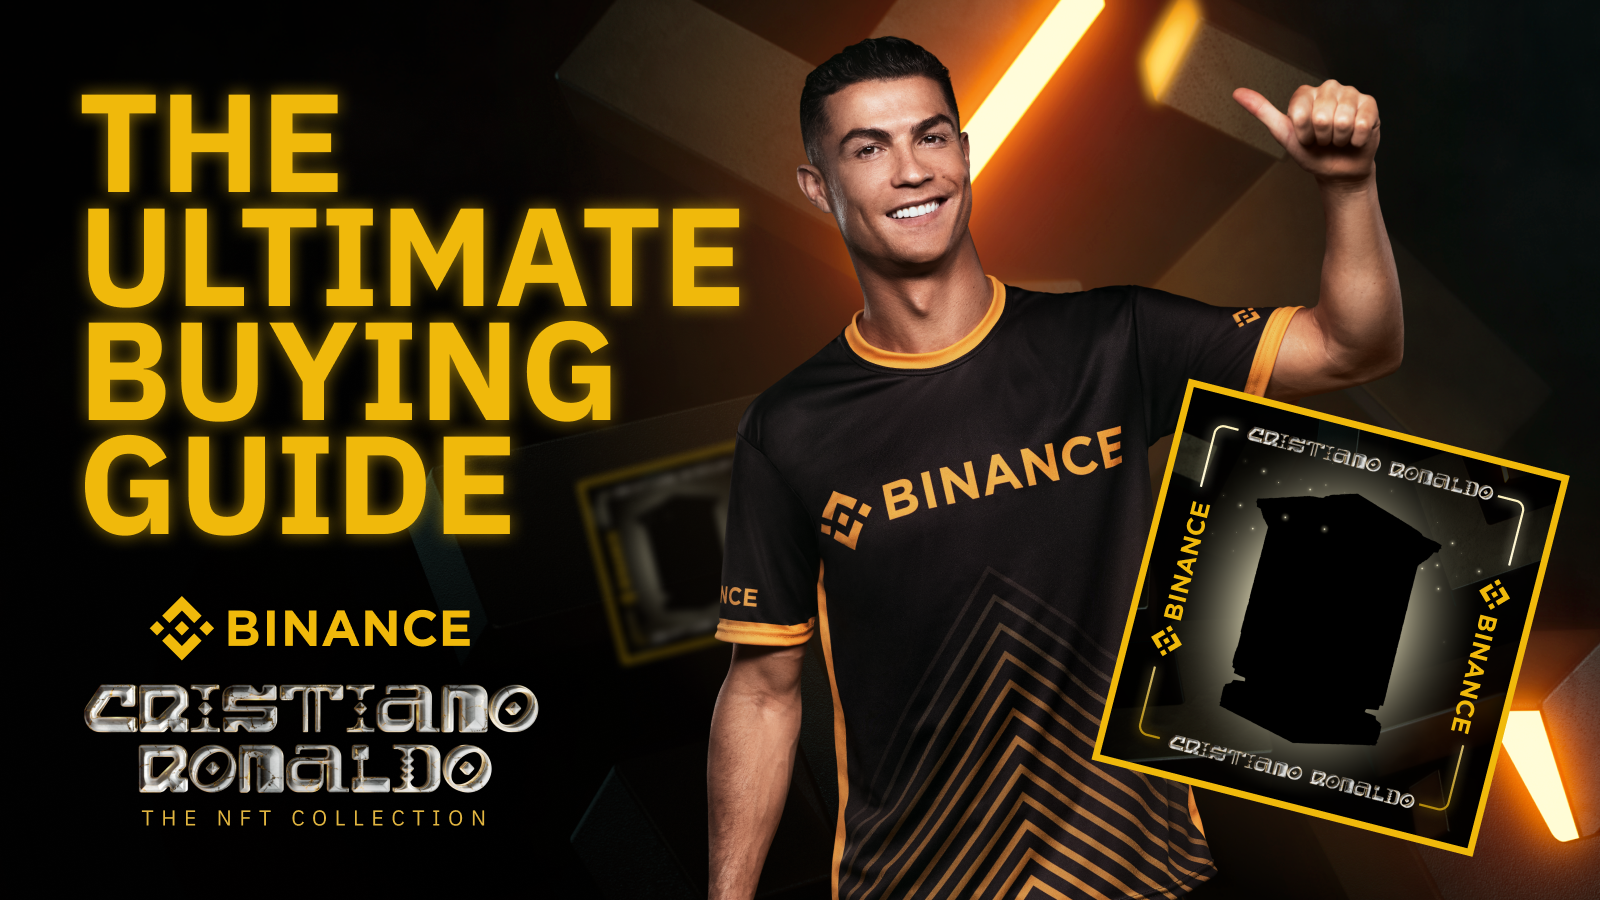 Cristiano Ronaldo samarbetade med Binance för att avslöja CR7 NFT Collection